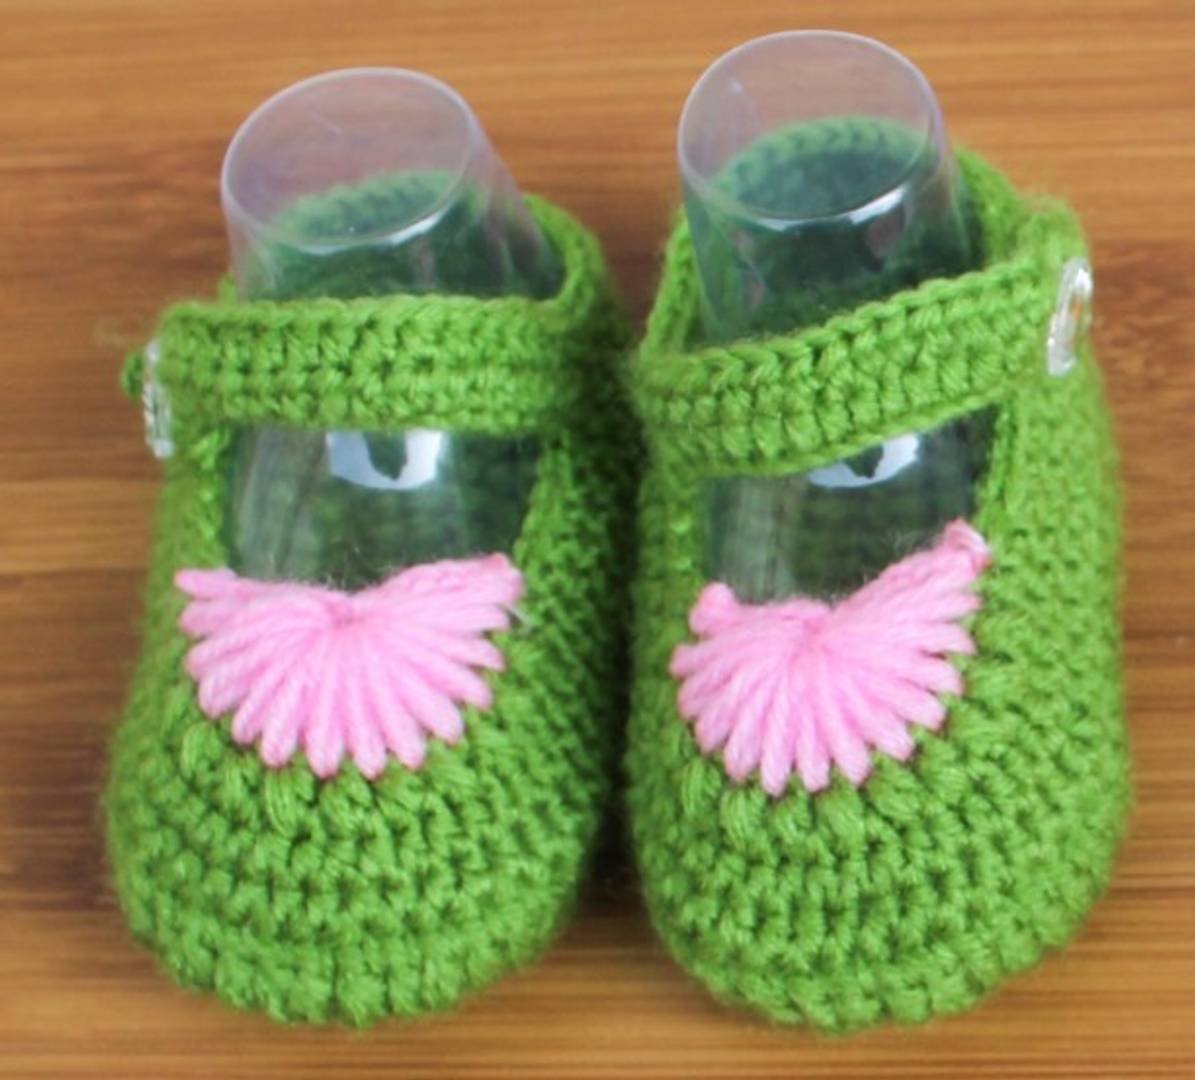 StyleRoad Infant Handmade Crochet Woolen Booties (Pack of 2)